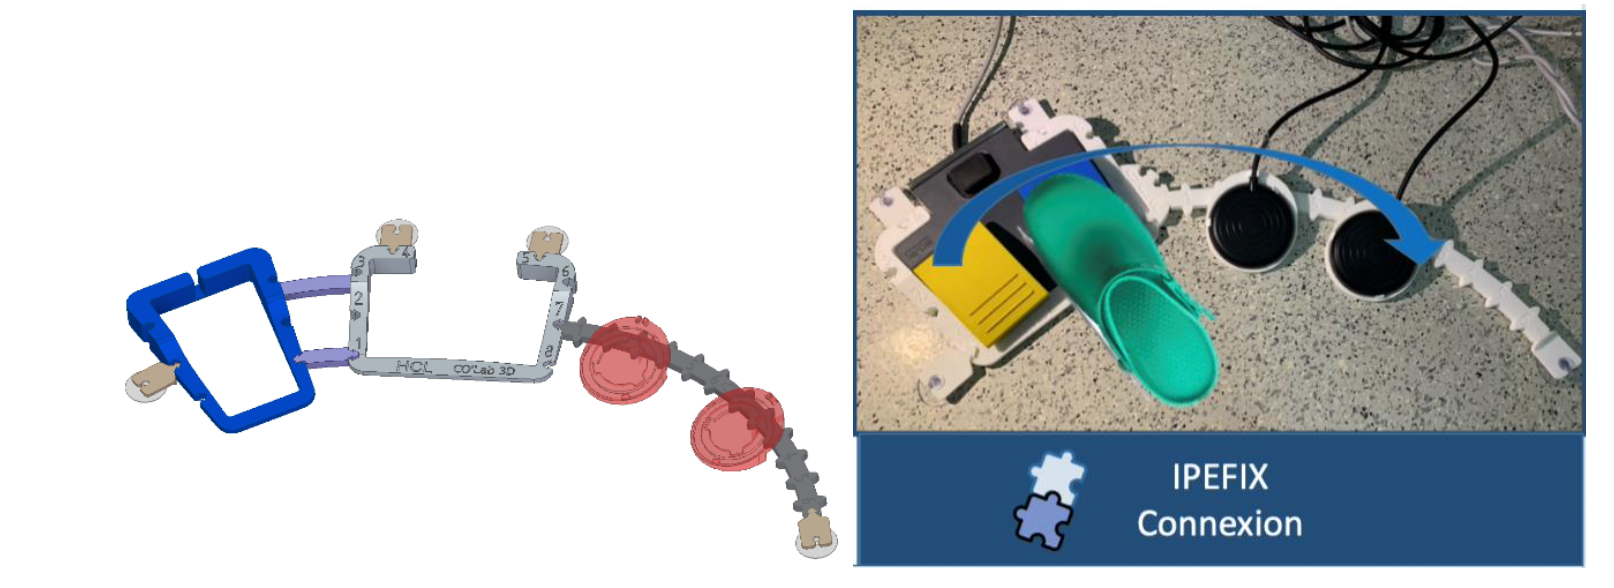 Endoscopie : les HCL lauréats du « Prix de l’innovation de l’année » grâce au fixateur de pédales imprimé en 3D